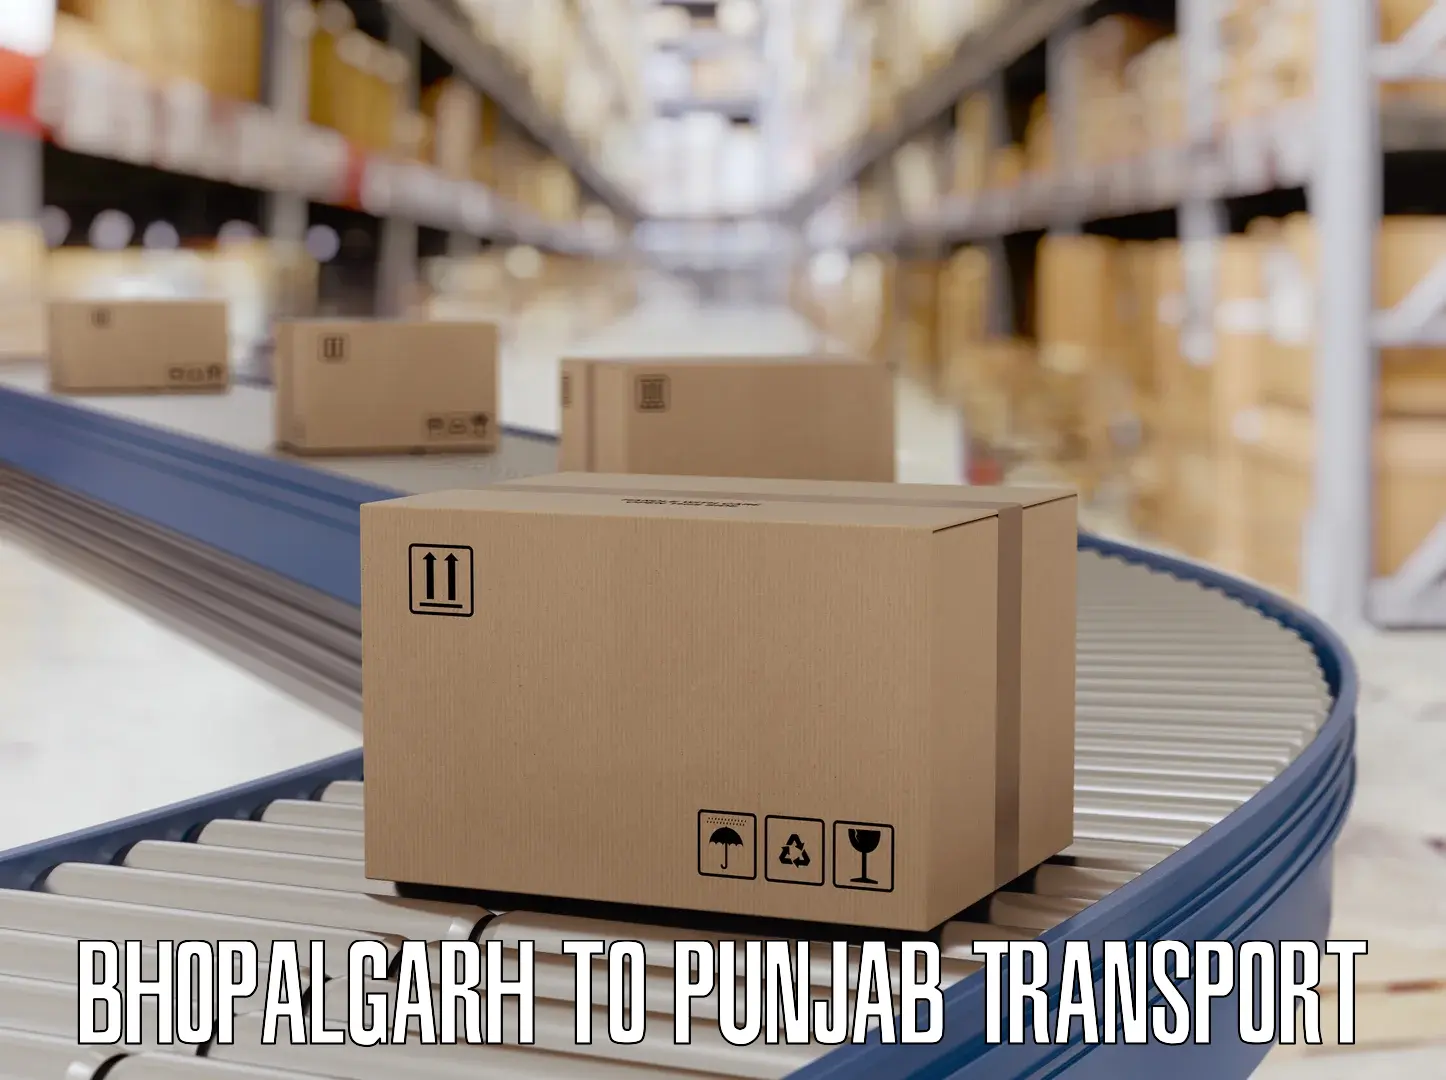 Daily parcel service transport in Bhopalgarh to Faridkot